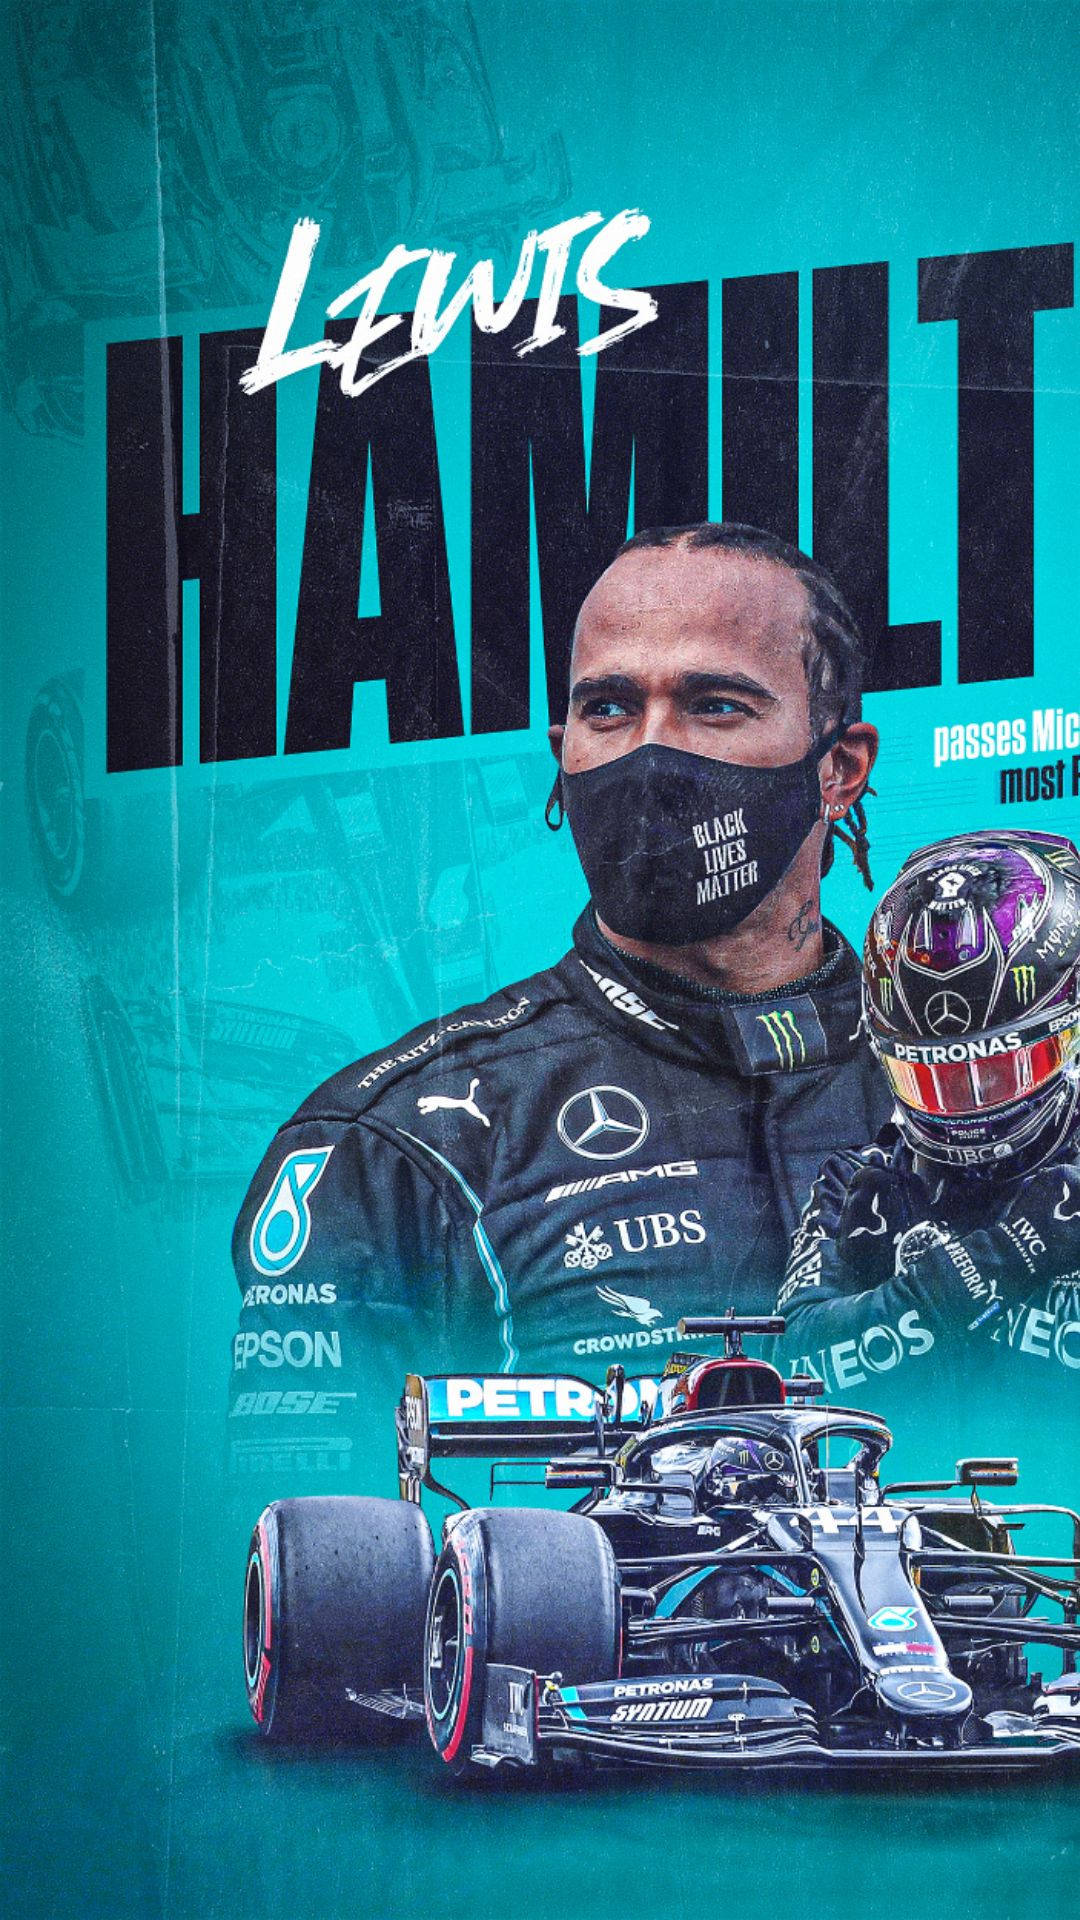 Lewishamilton Überquert Die Ziellinie In Einem Historischen Sieg Beim Großen Preis Von Großbritannien Der Formel 1 2019. Wallpaper